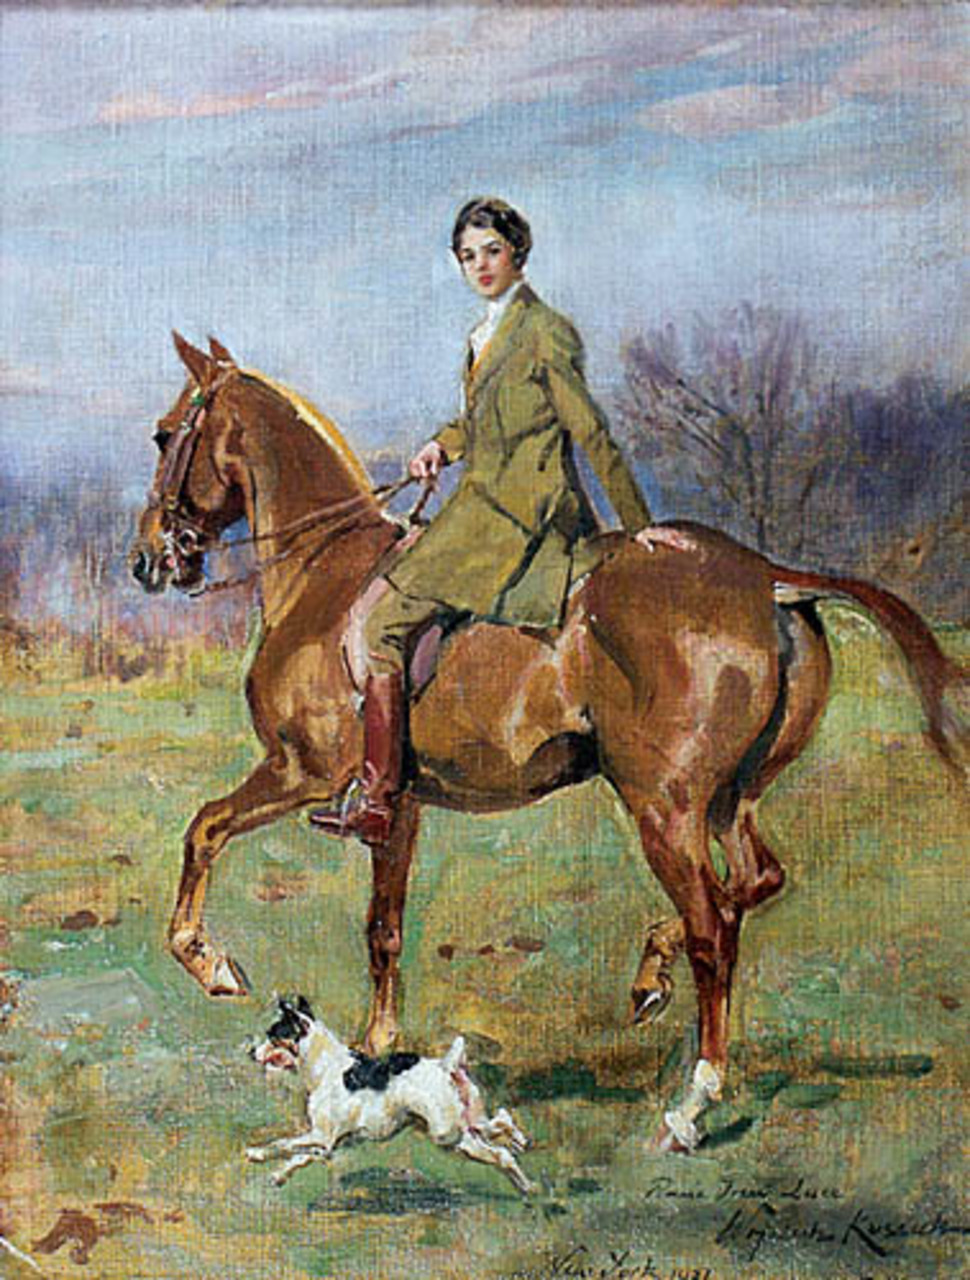 Wojciech Kossak (1856-1942), "Portret panny Ireny Luca na koniu", Nowy Jork, 1921 rok, źródło: Desa Unicum